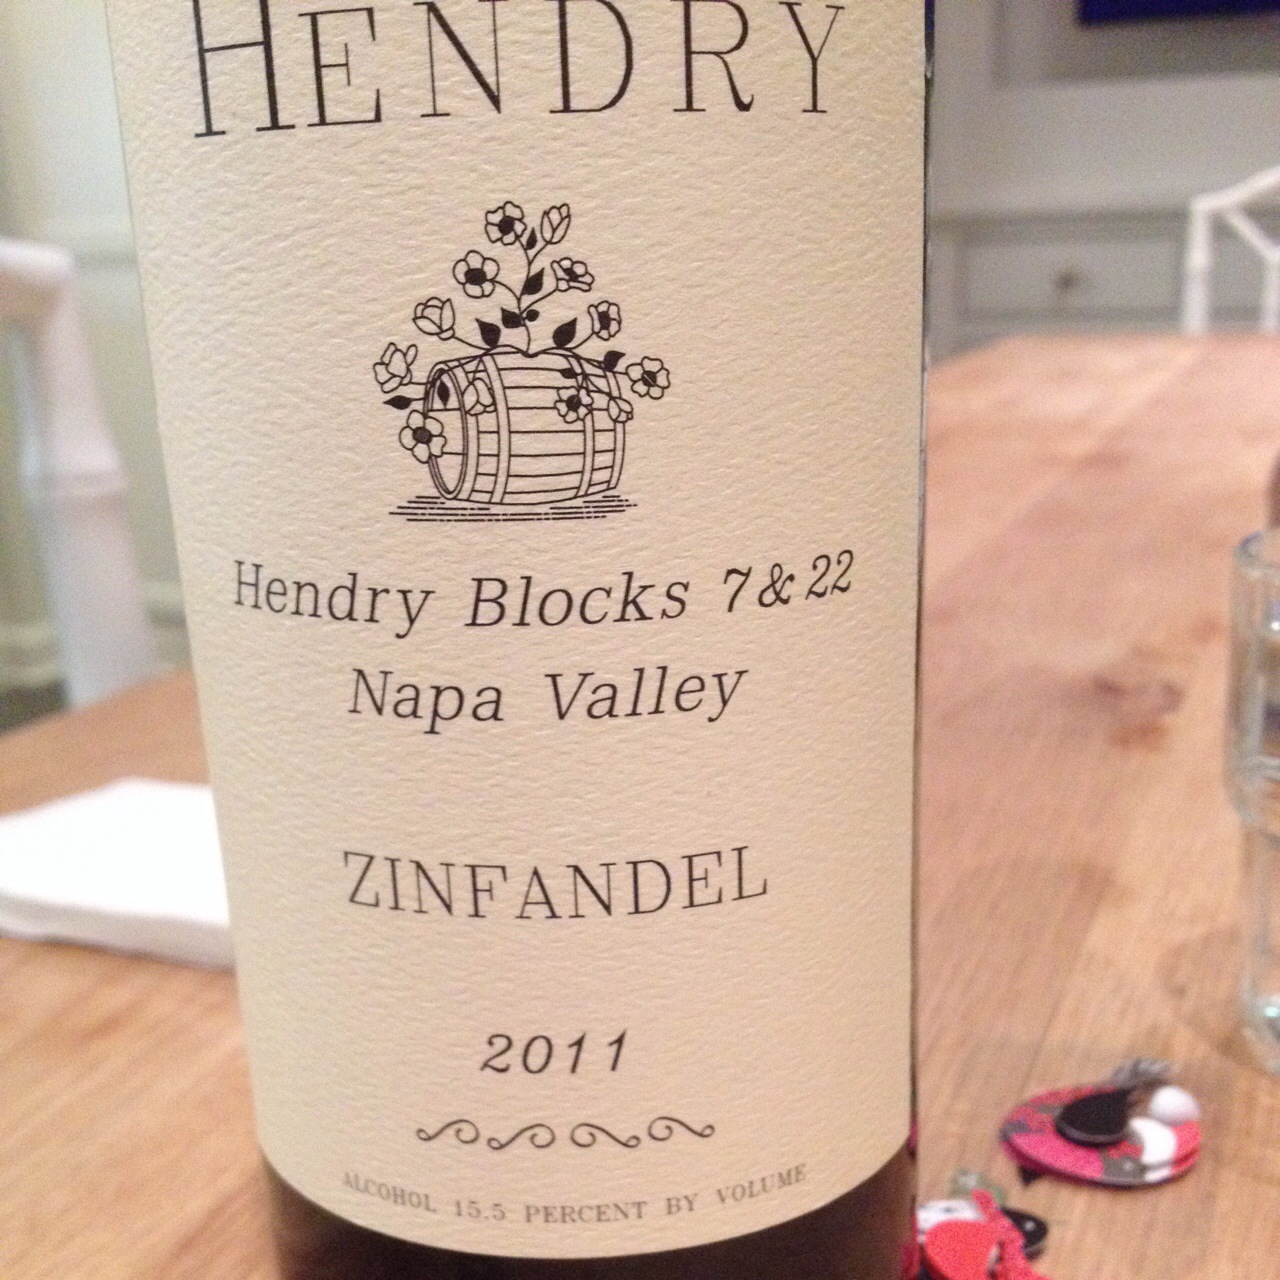 Hendry Zinfandel Block 7